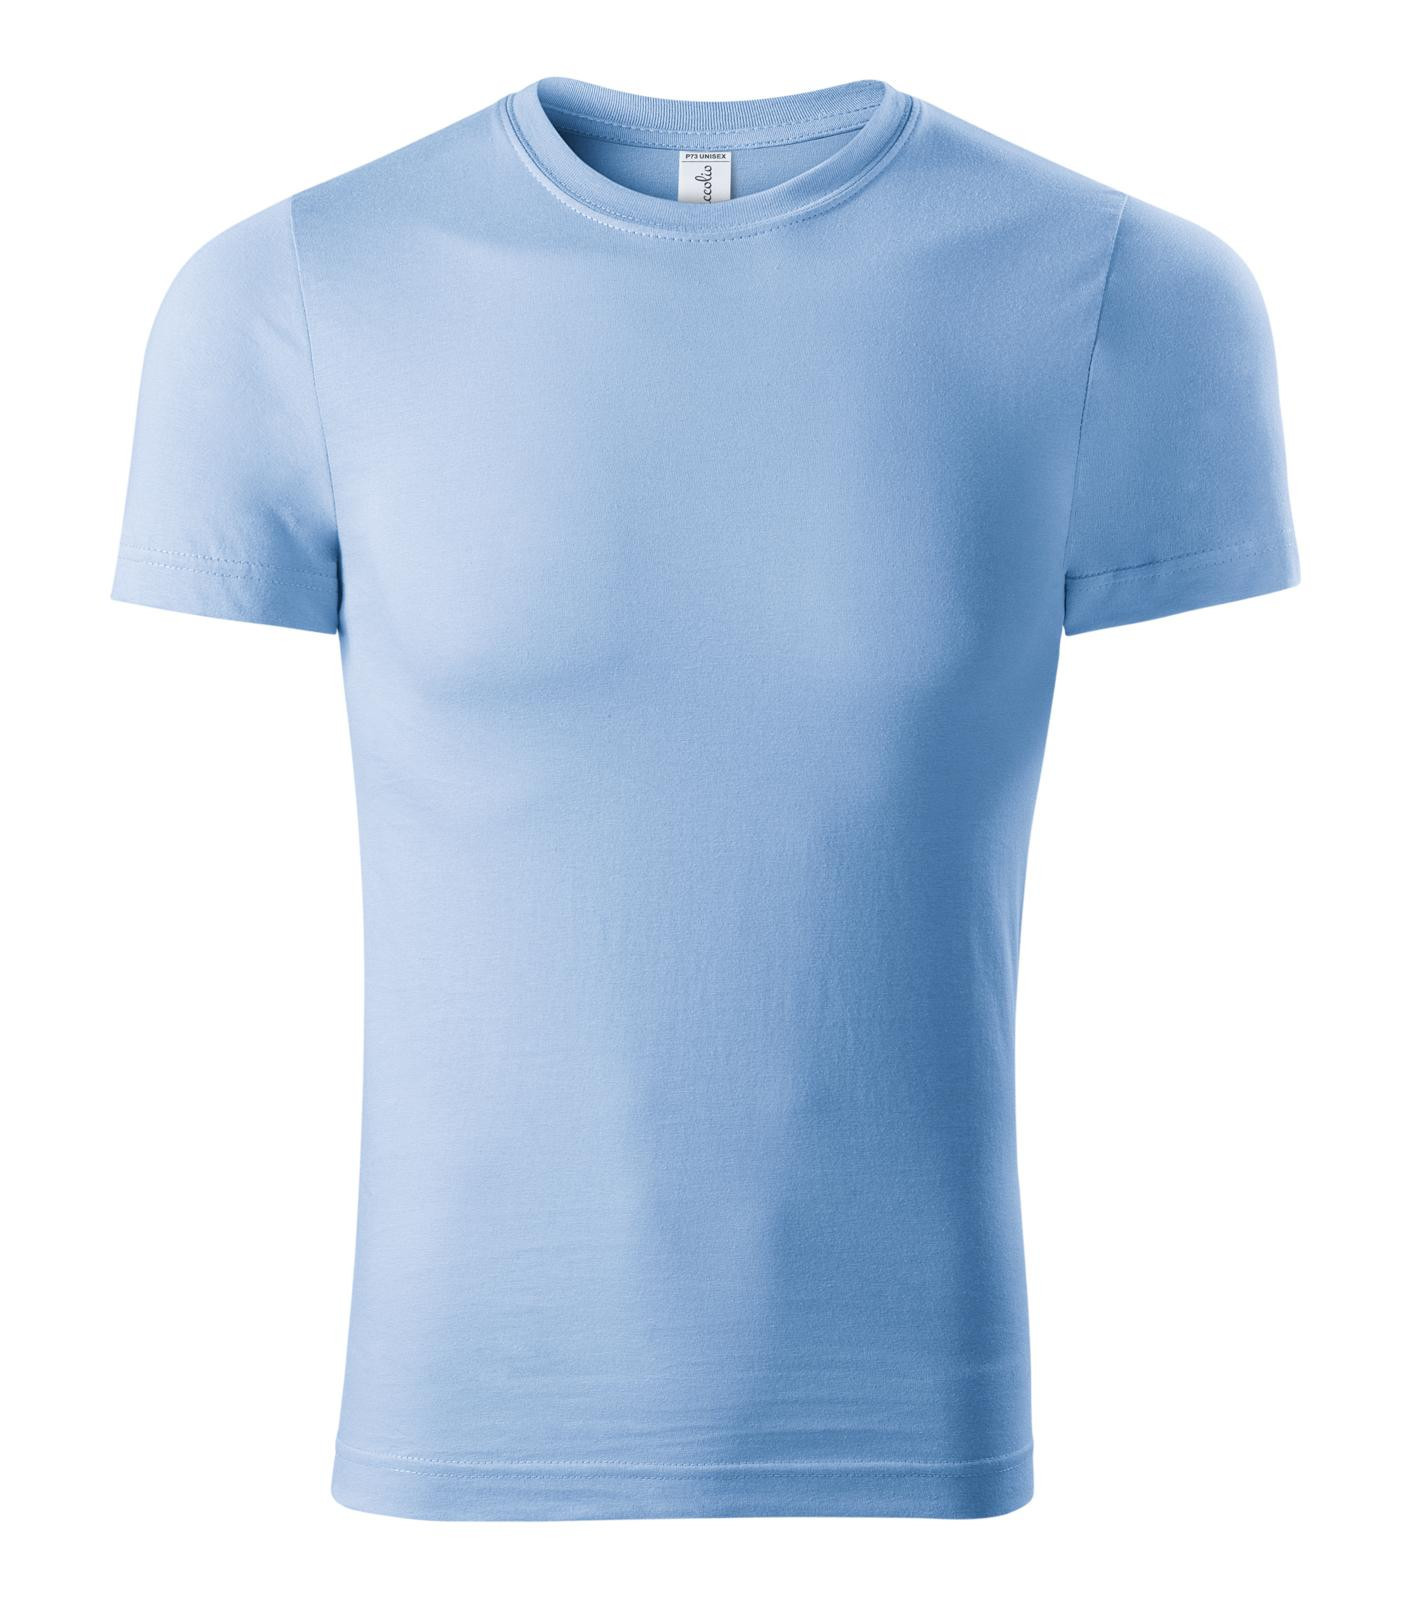 Unisex tričko Piccolio Paint P73 - veľkosť: S, farba: nebesky modrá